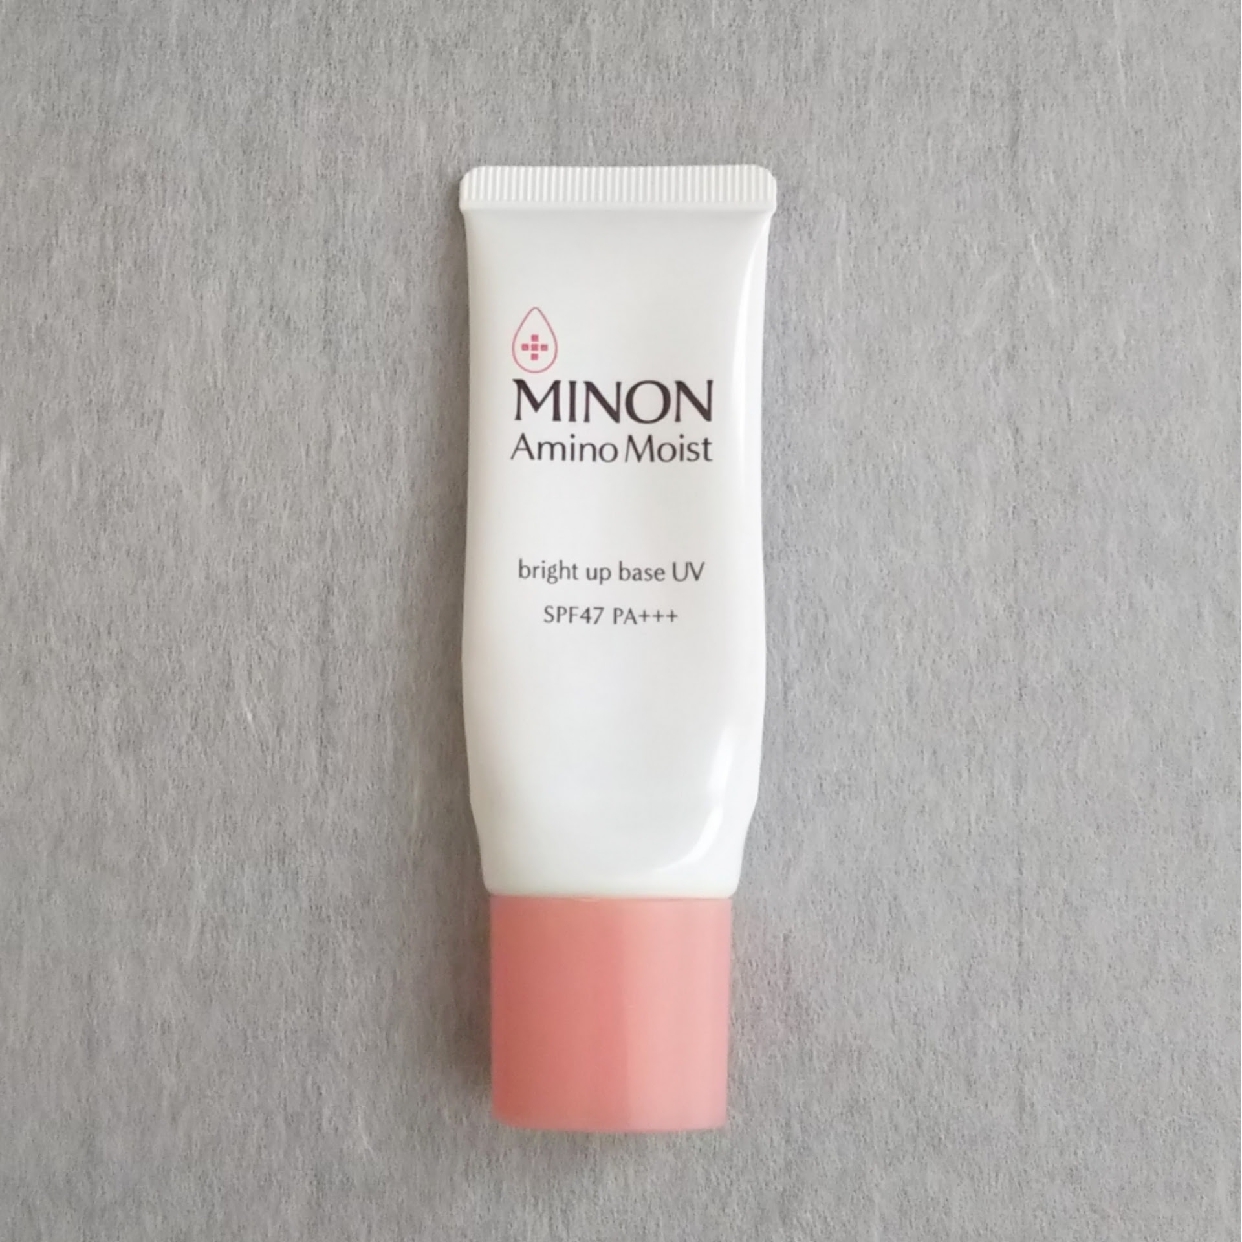 MINON(ミノン) アミノモイスト ブライトアップベース UVの口コミ・評判 